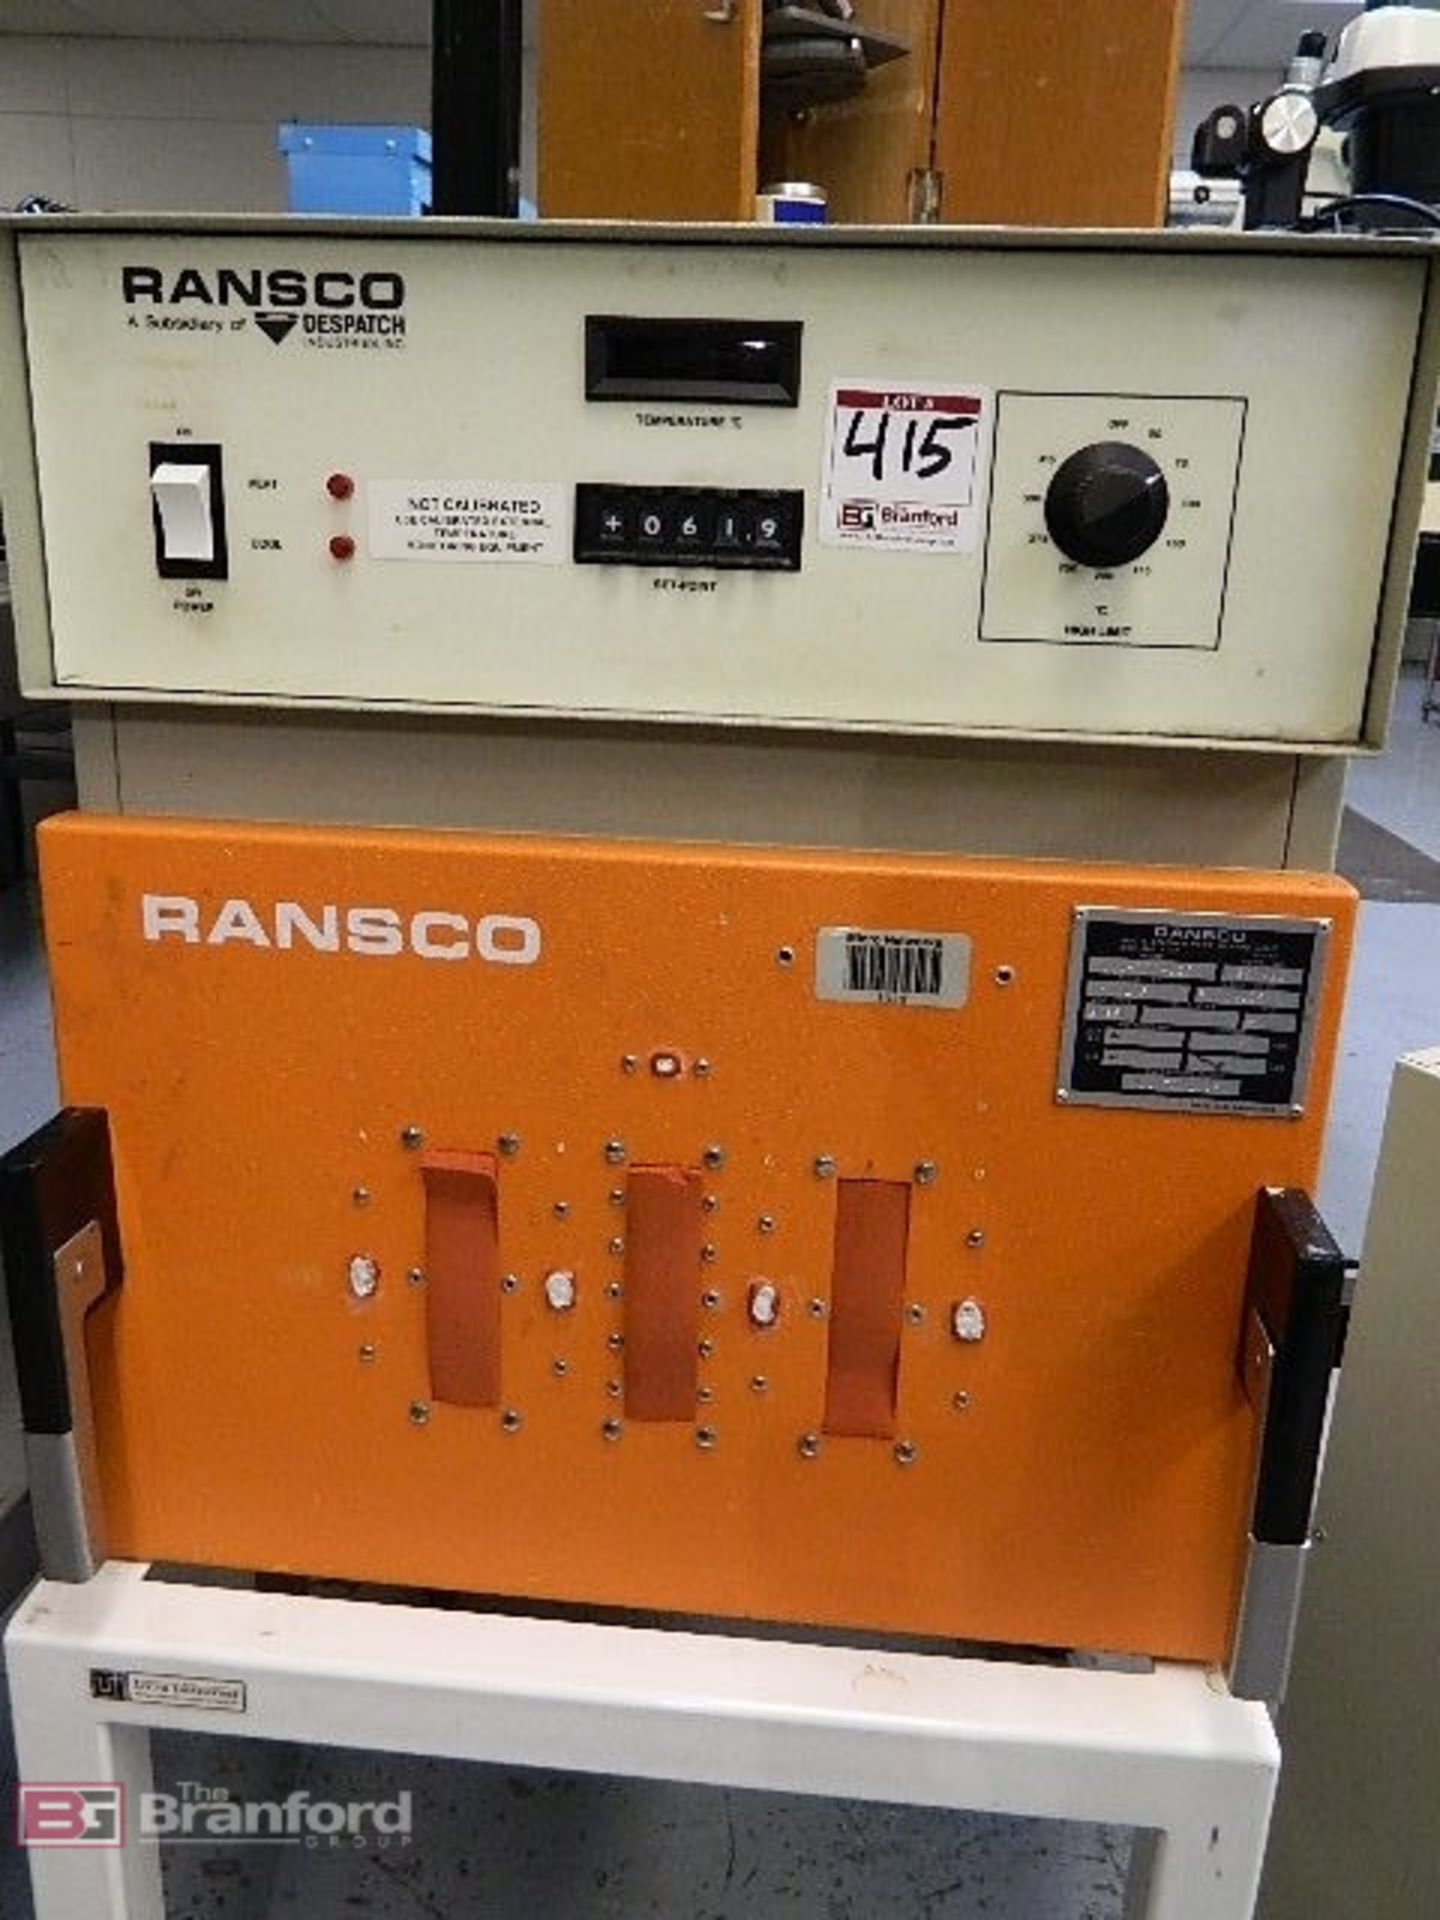 Ransco Oven Temp Range -30° to 100°C